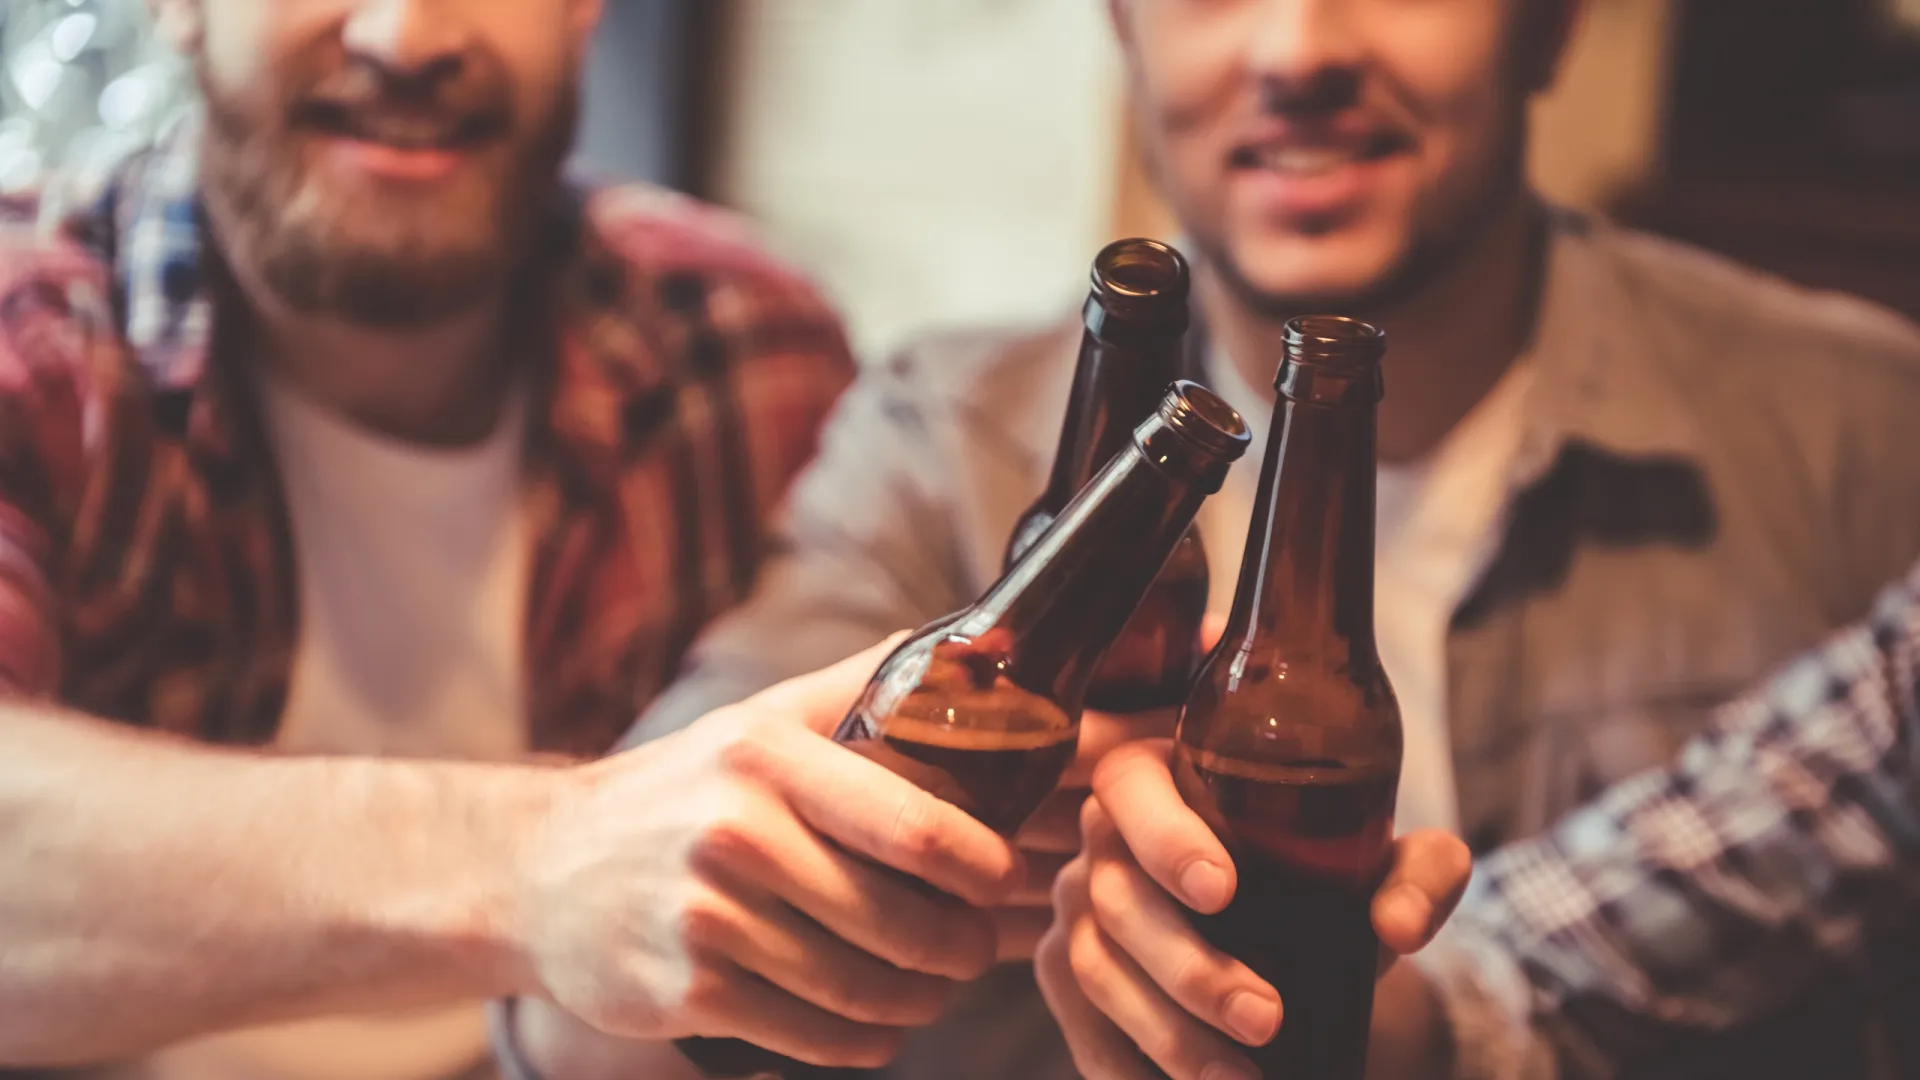 Пивным алкоголиком можно стать «за компанию». Фото: George Rudy / Shutterstock / Fotodom